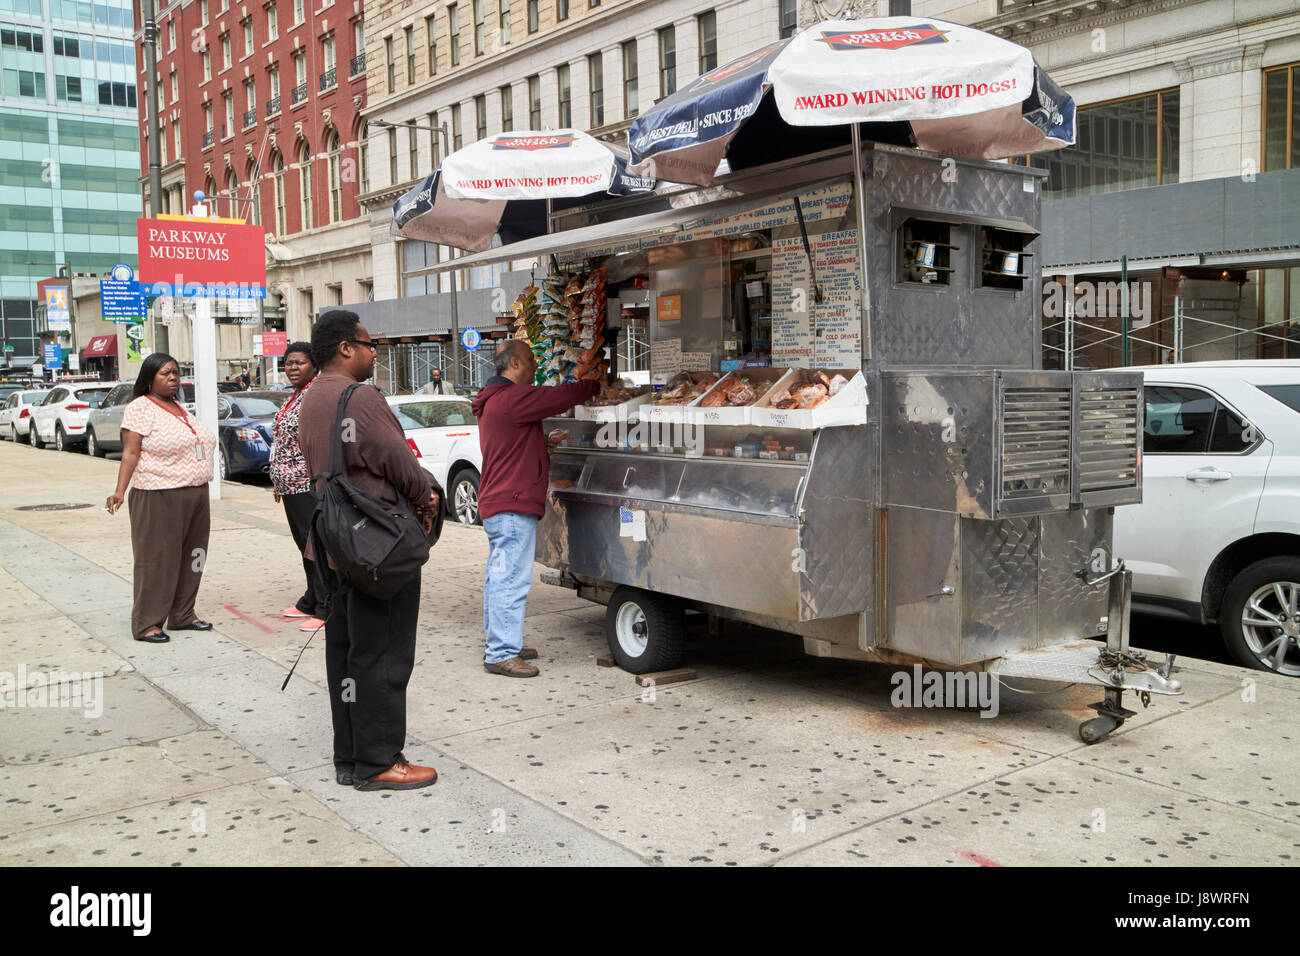 Hot-dog et le centre-ville de Philadelphie USA panier alimentaire Banque D'Images